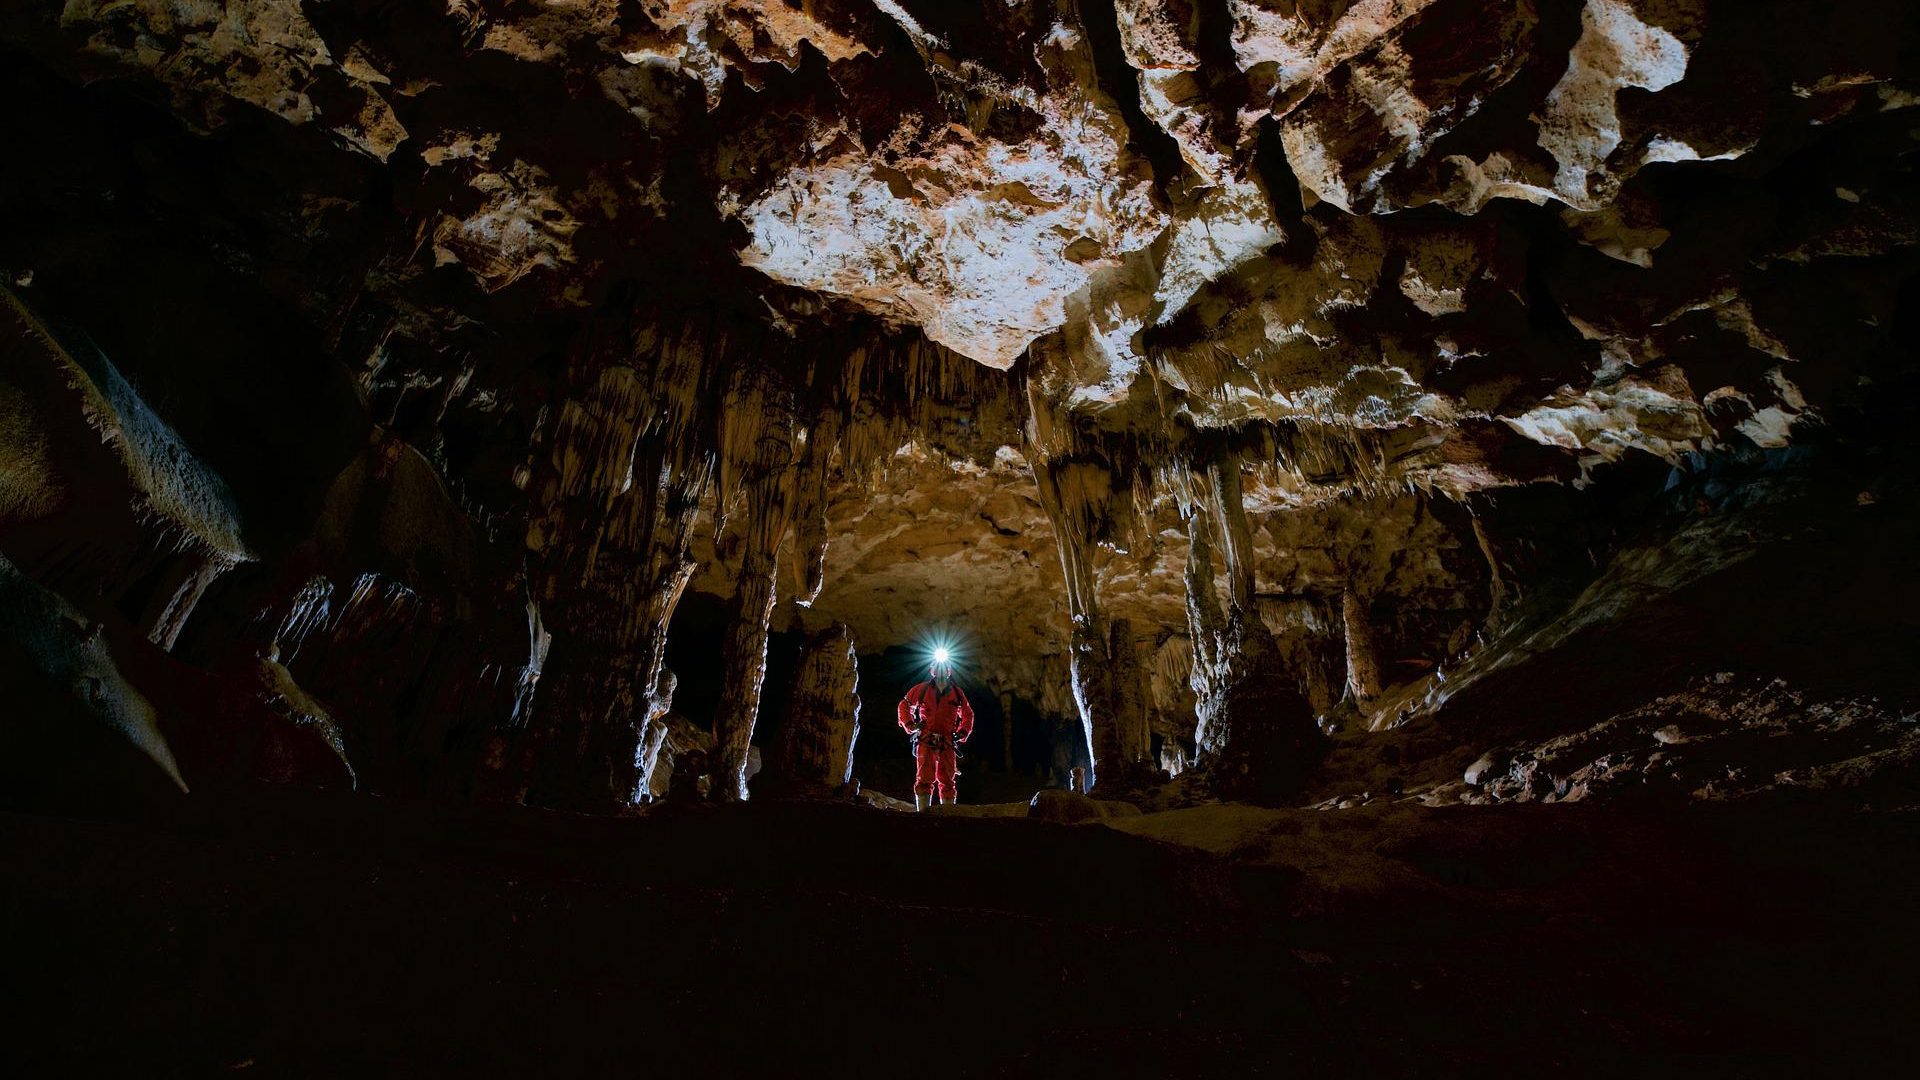 Caving cave near Combloux